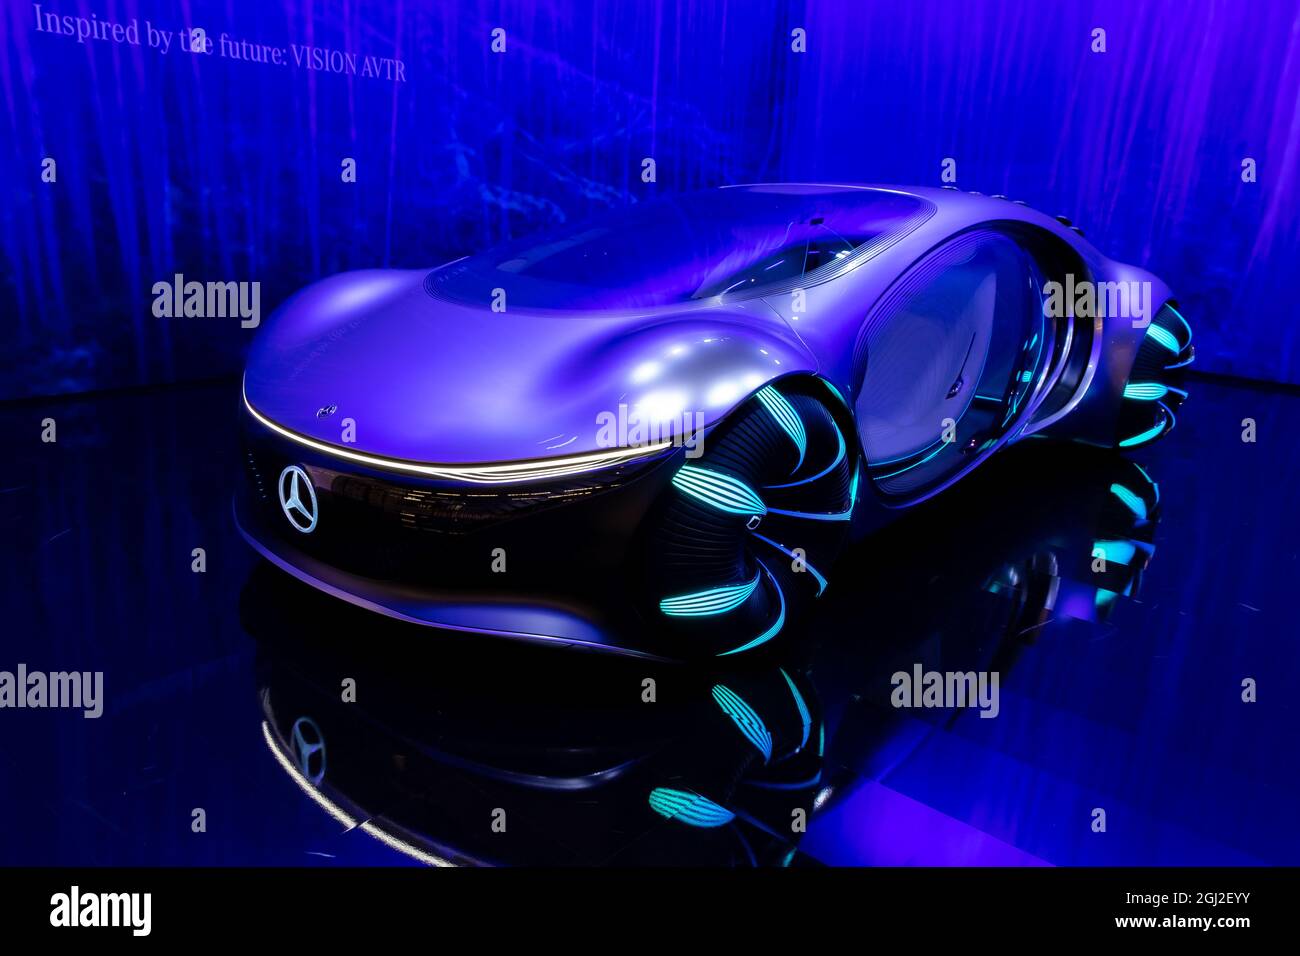 Mercedes-Benz Vision AVTR intuitivo concept car intelligente, che legge la tua mente durante la guida, presentato al salone IAA Mobility 2021 di Monaco, Germa Foto Stock